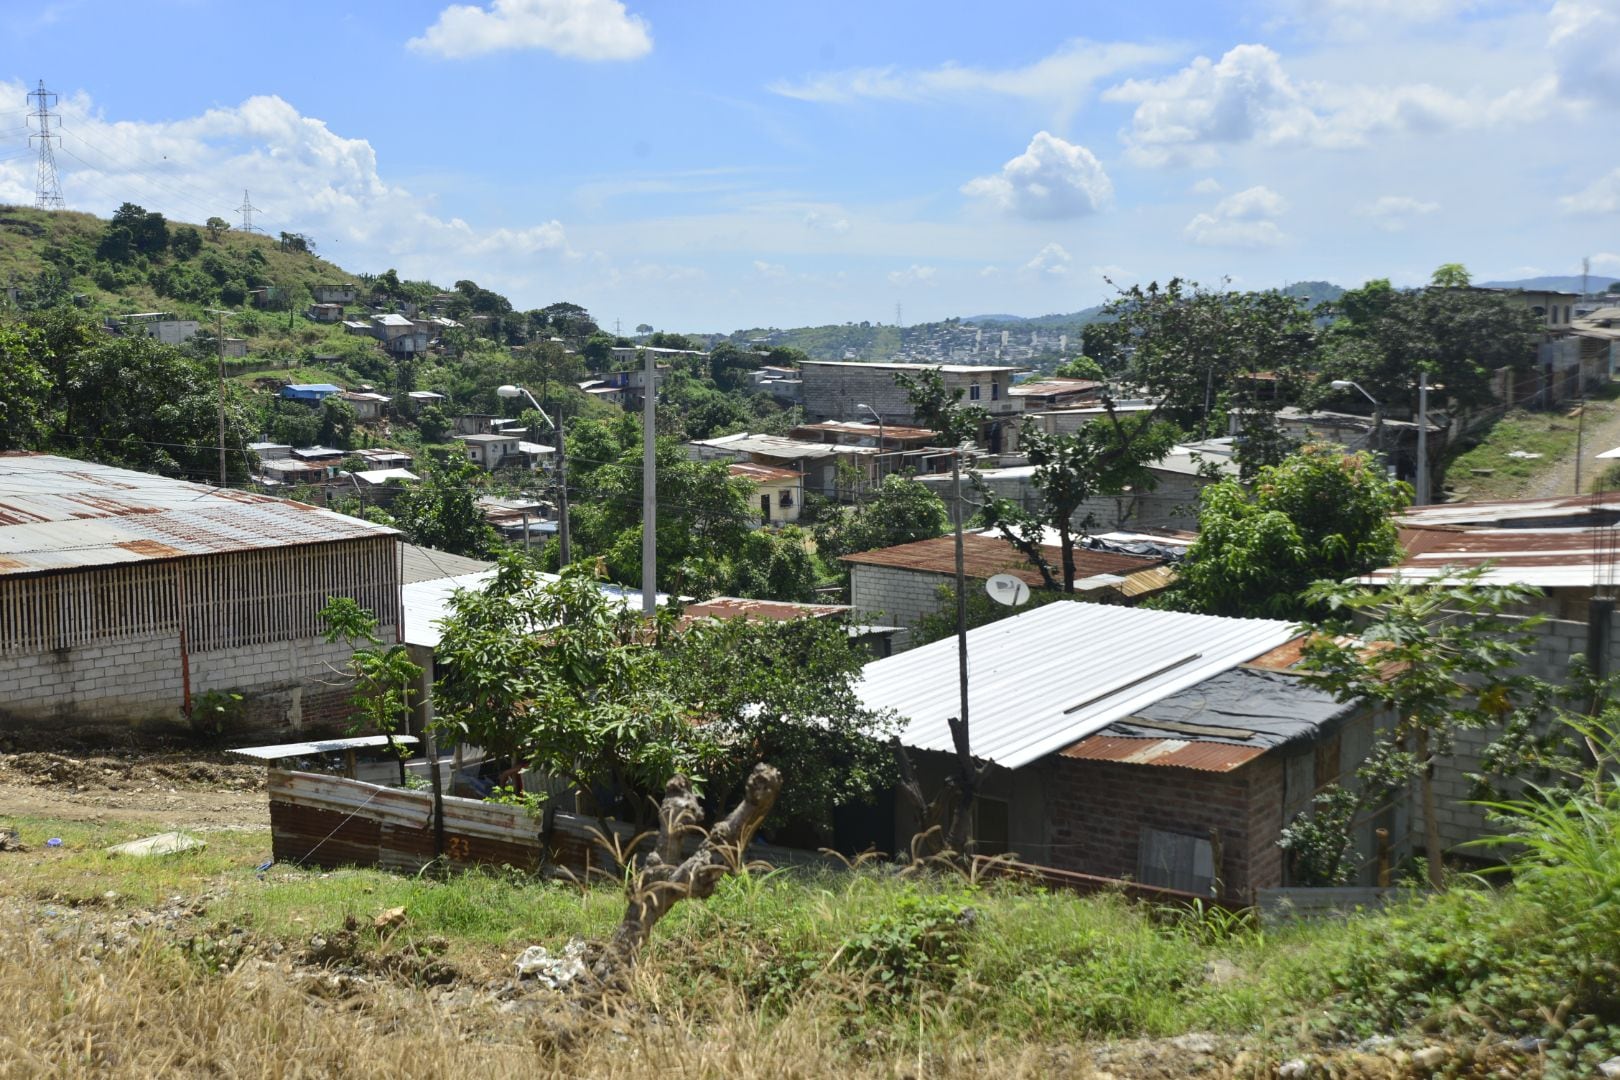 Nuevo Guayaquil, circuito que abarca el 20 % de Nueva Prosperina, en cerro de difícil acceso, reporta 44 asesinatos 